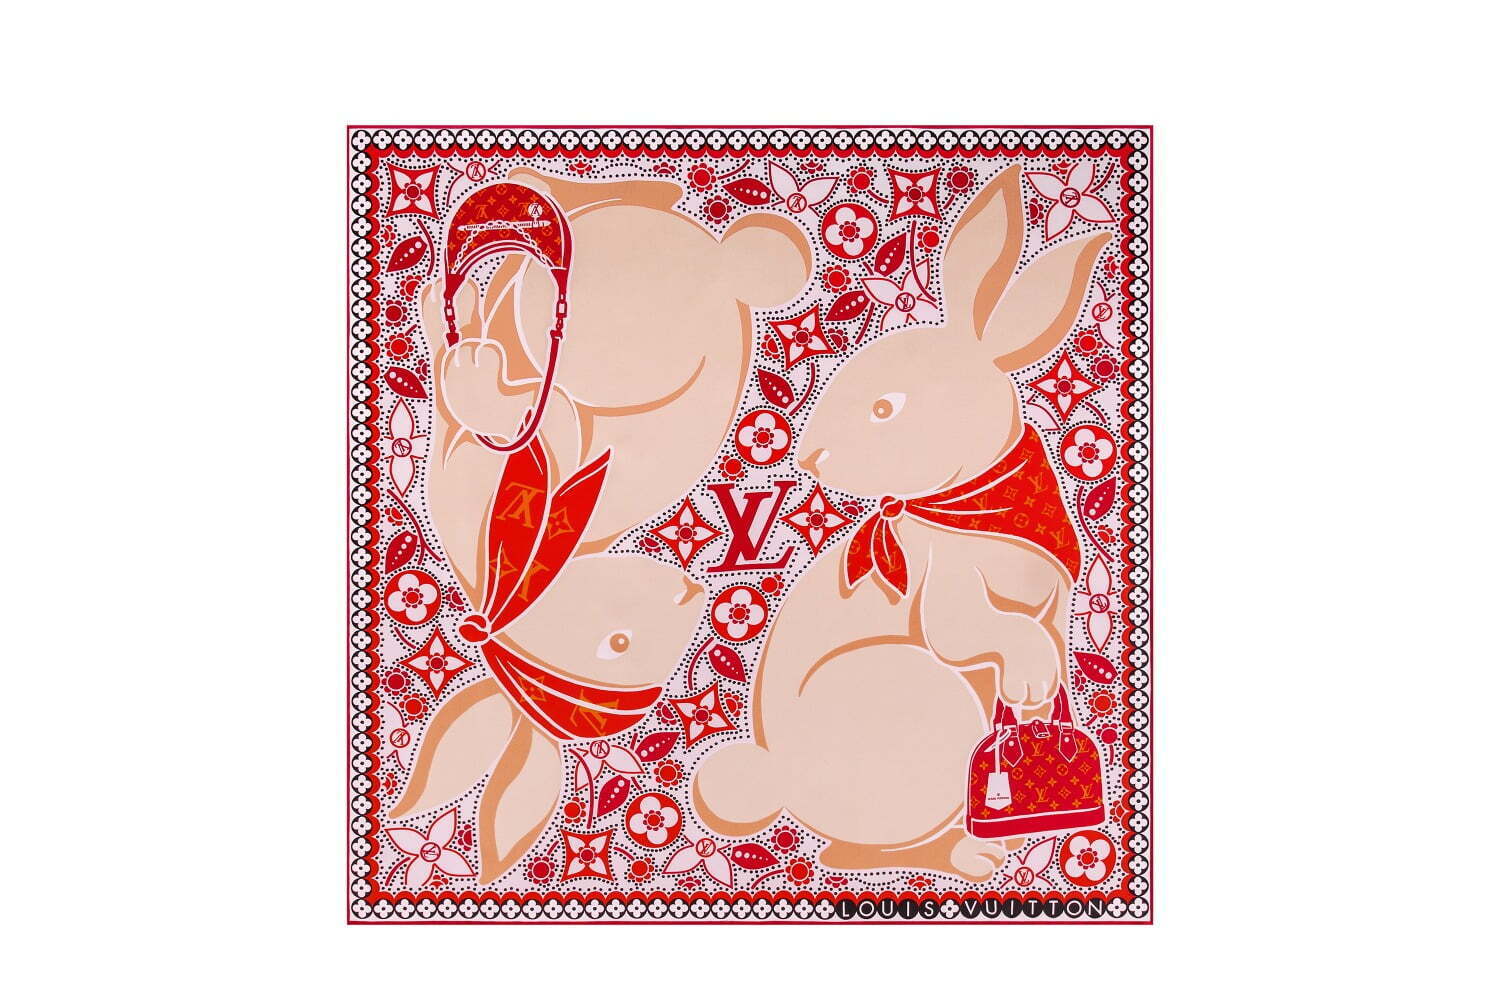 ルイ・ヴィトン23年干支「うさぎ」を描いたスカーフ、真っ赤なマフラー 